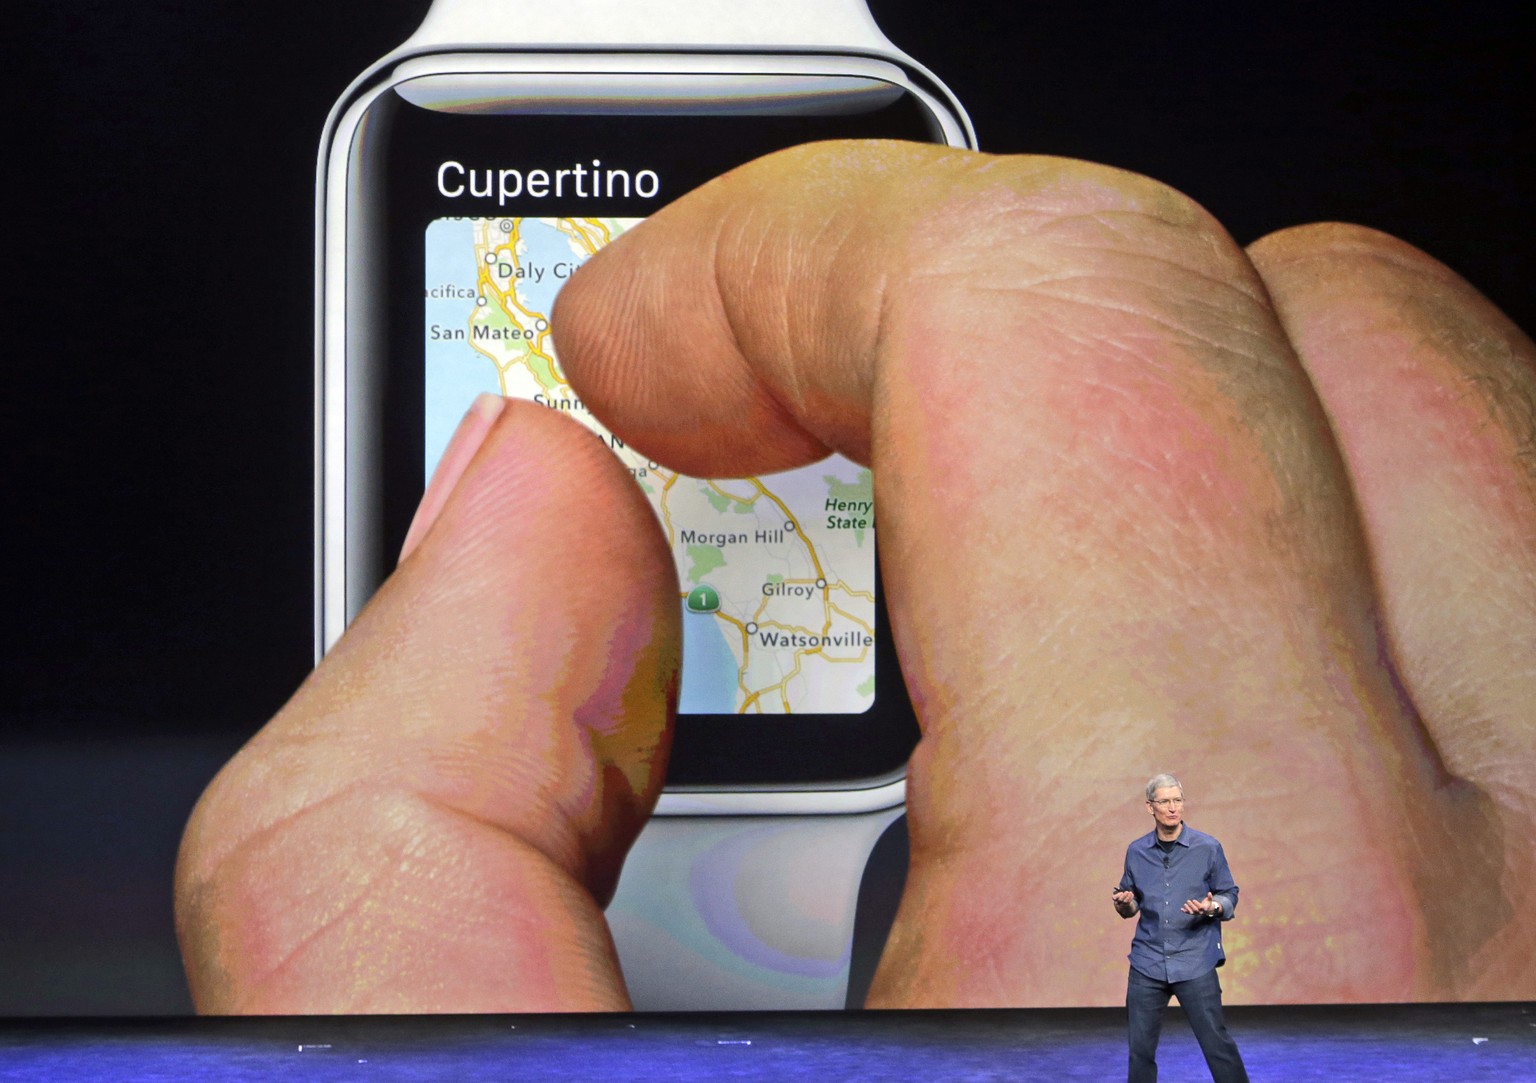 Die Apple Watch ist auch ein Navigationsgerät am Handgelenk. Sie lotst den User per Turn-by-Turn-Navigation ans Ziel. Wenn man abbiegen soll, vibriert das Gerät individuell für links oder rechts.